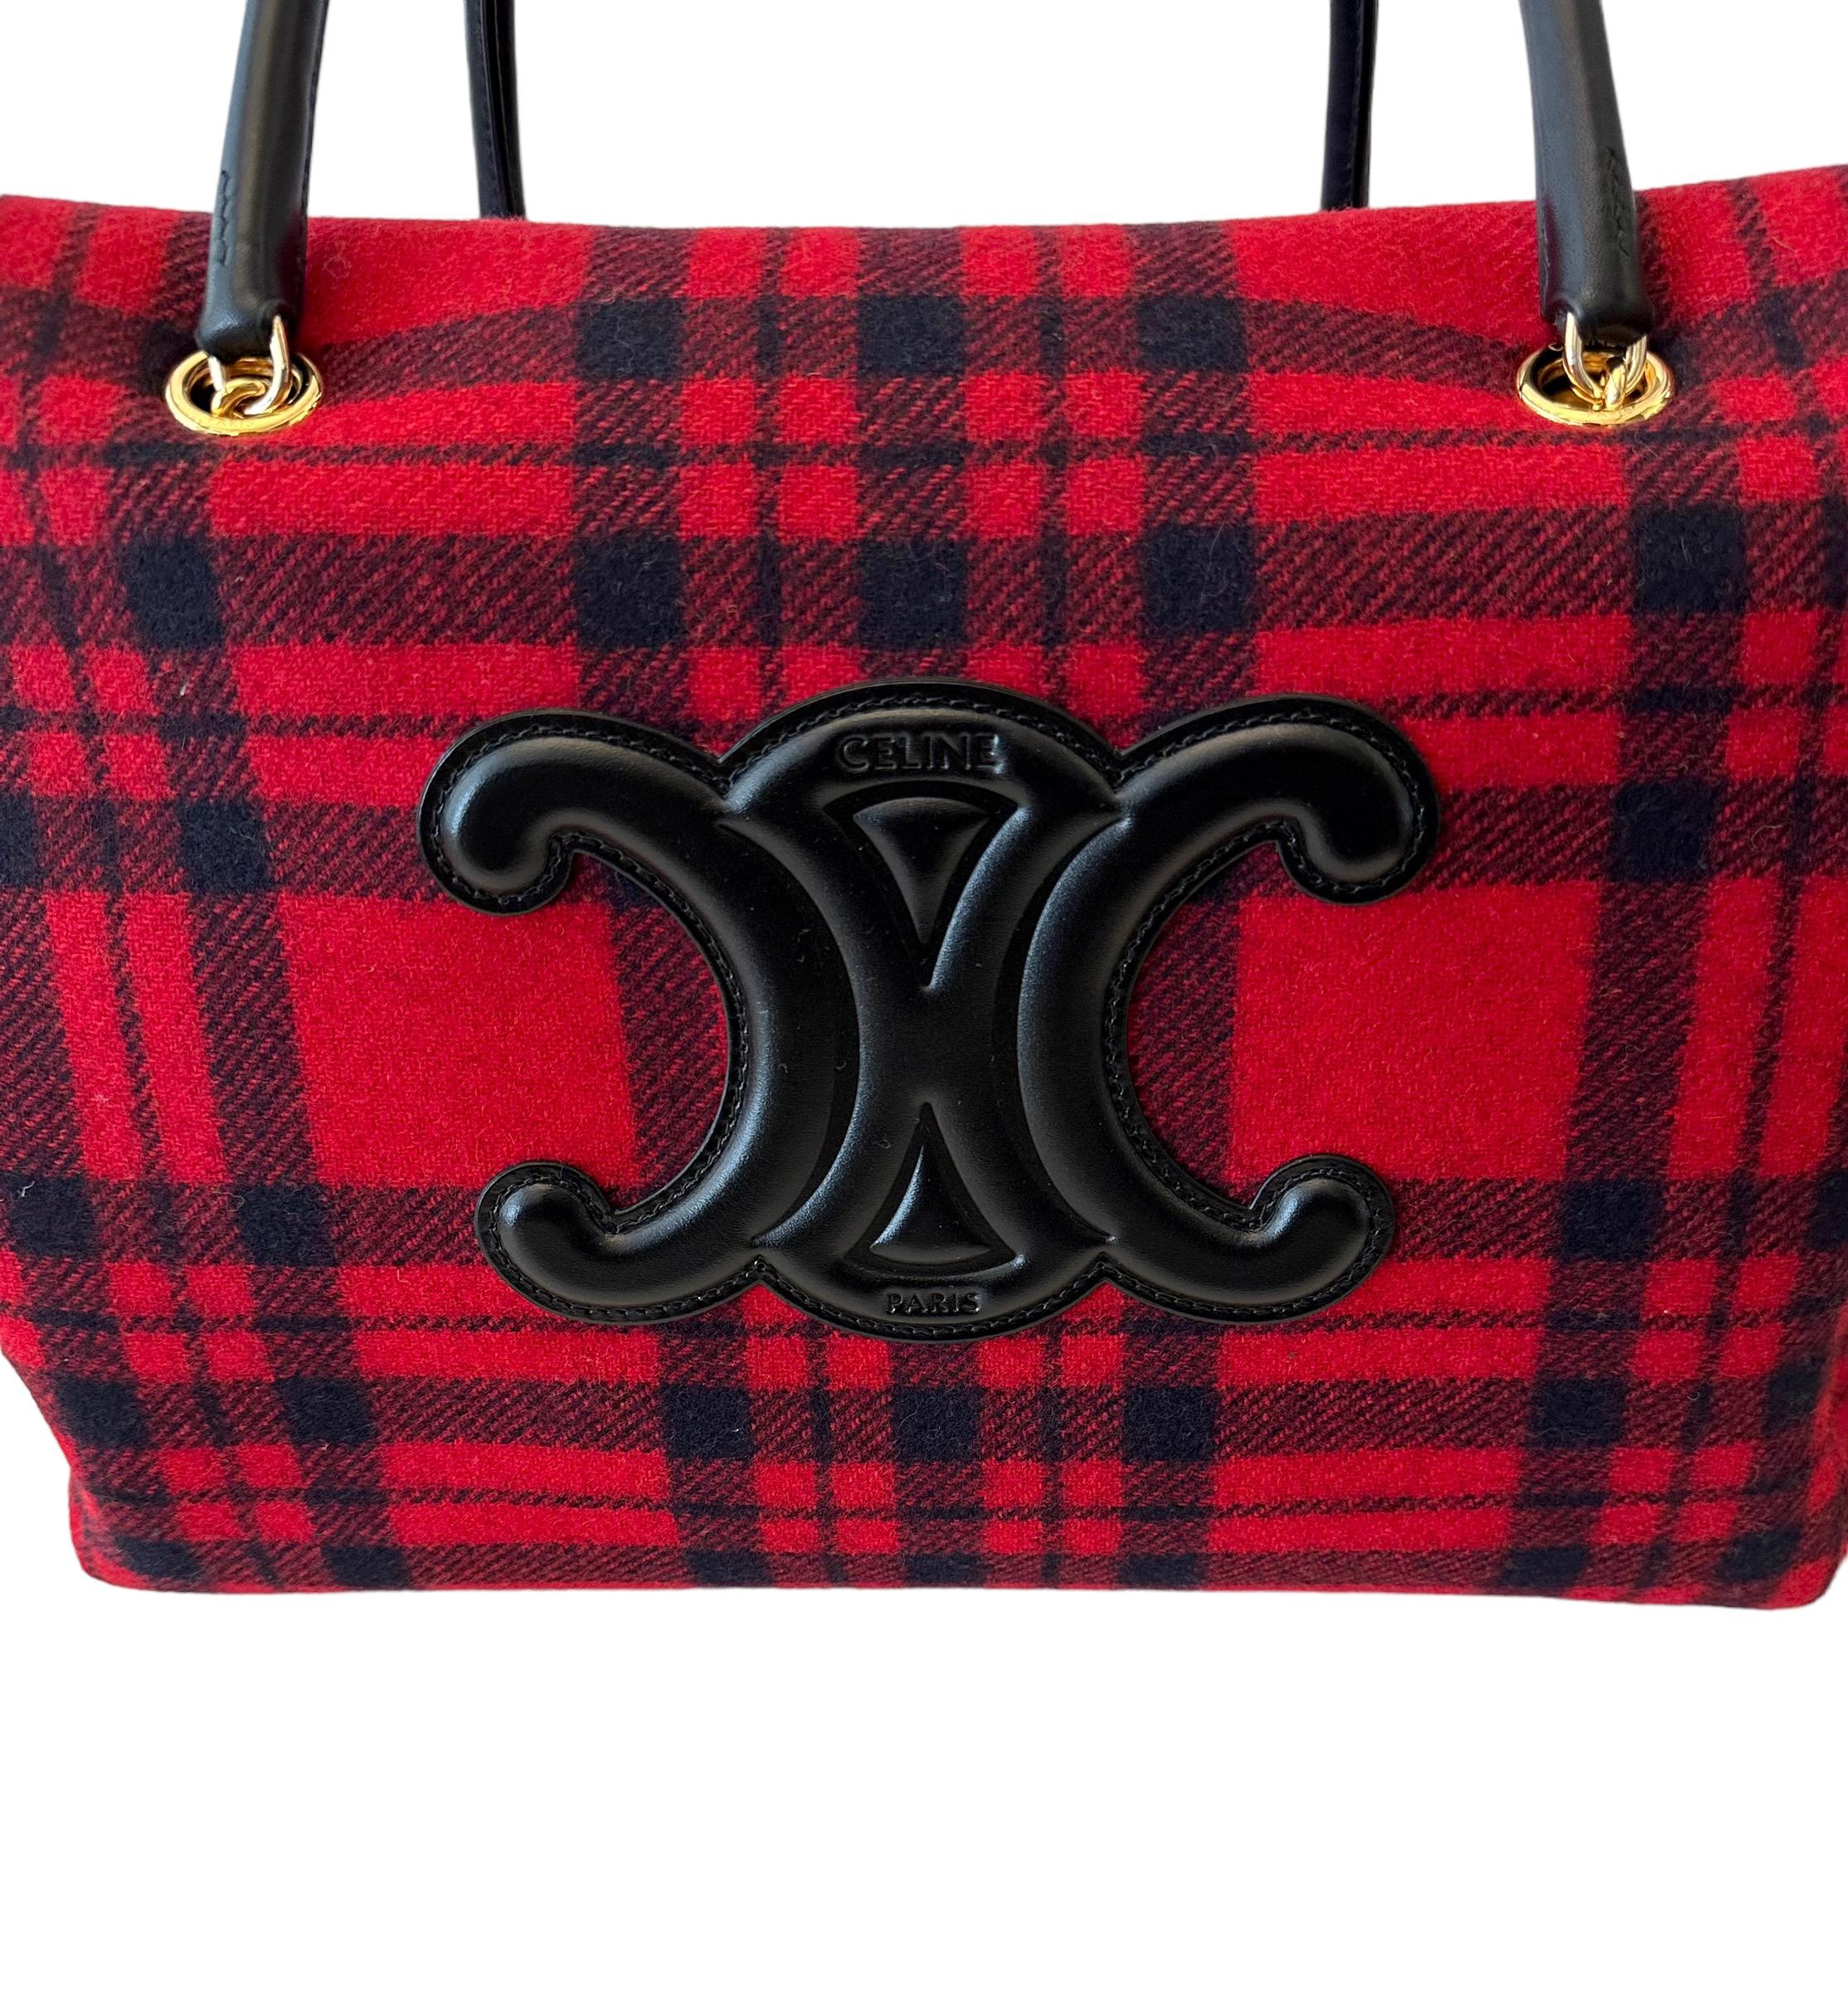 Créé par Hedi Slimane pour Céline en 2021, ce sac fourre-tout est confectionné dans un tissu écossais en laine noire et rouge.
Il présente un logo surdimensionné en cuir de veau noir ainsi que des poignées en cuir de veau noir et une fermeture à